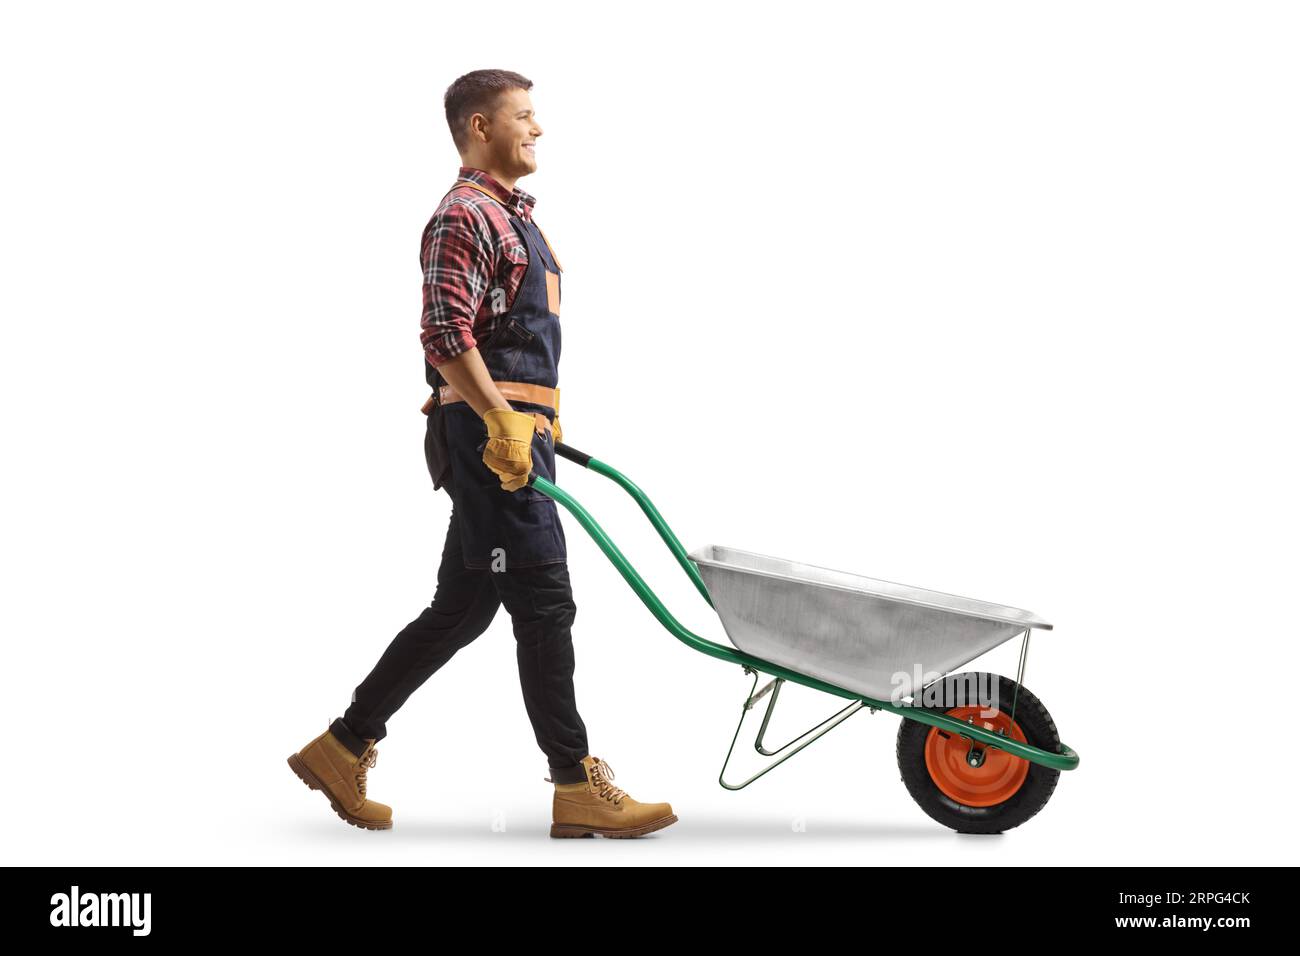 Immagine del profilo completo di un giardiniere che spinge una carriola vuota isolata su sfondo bianco Foto Stock